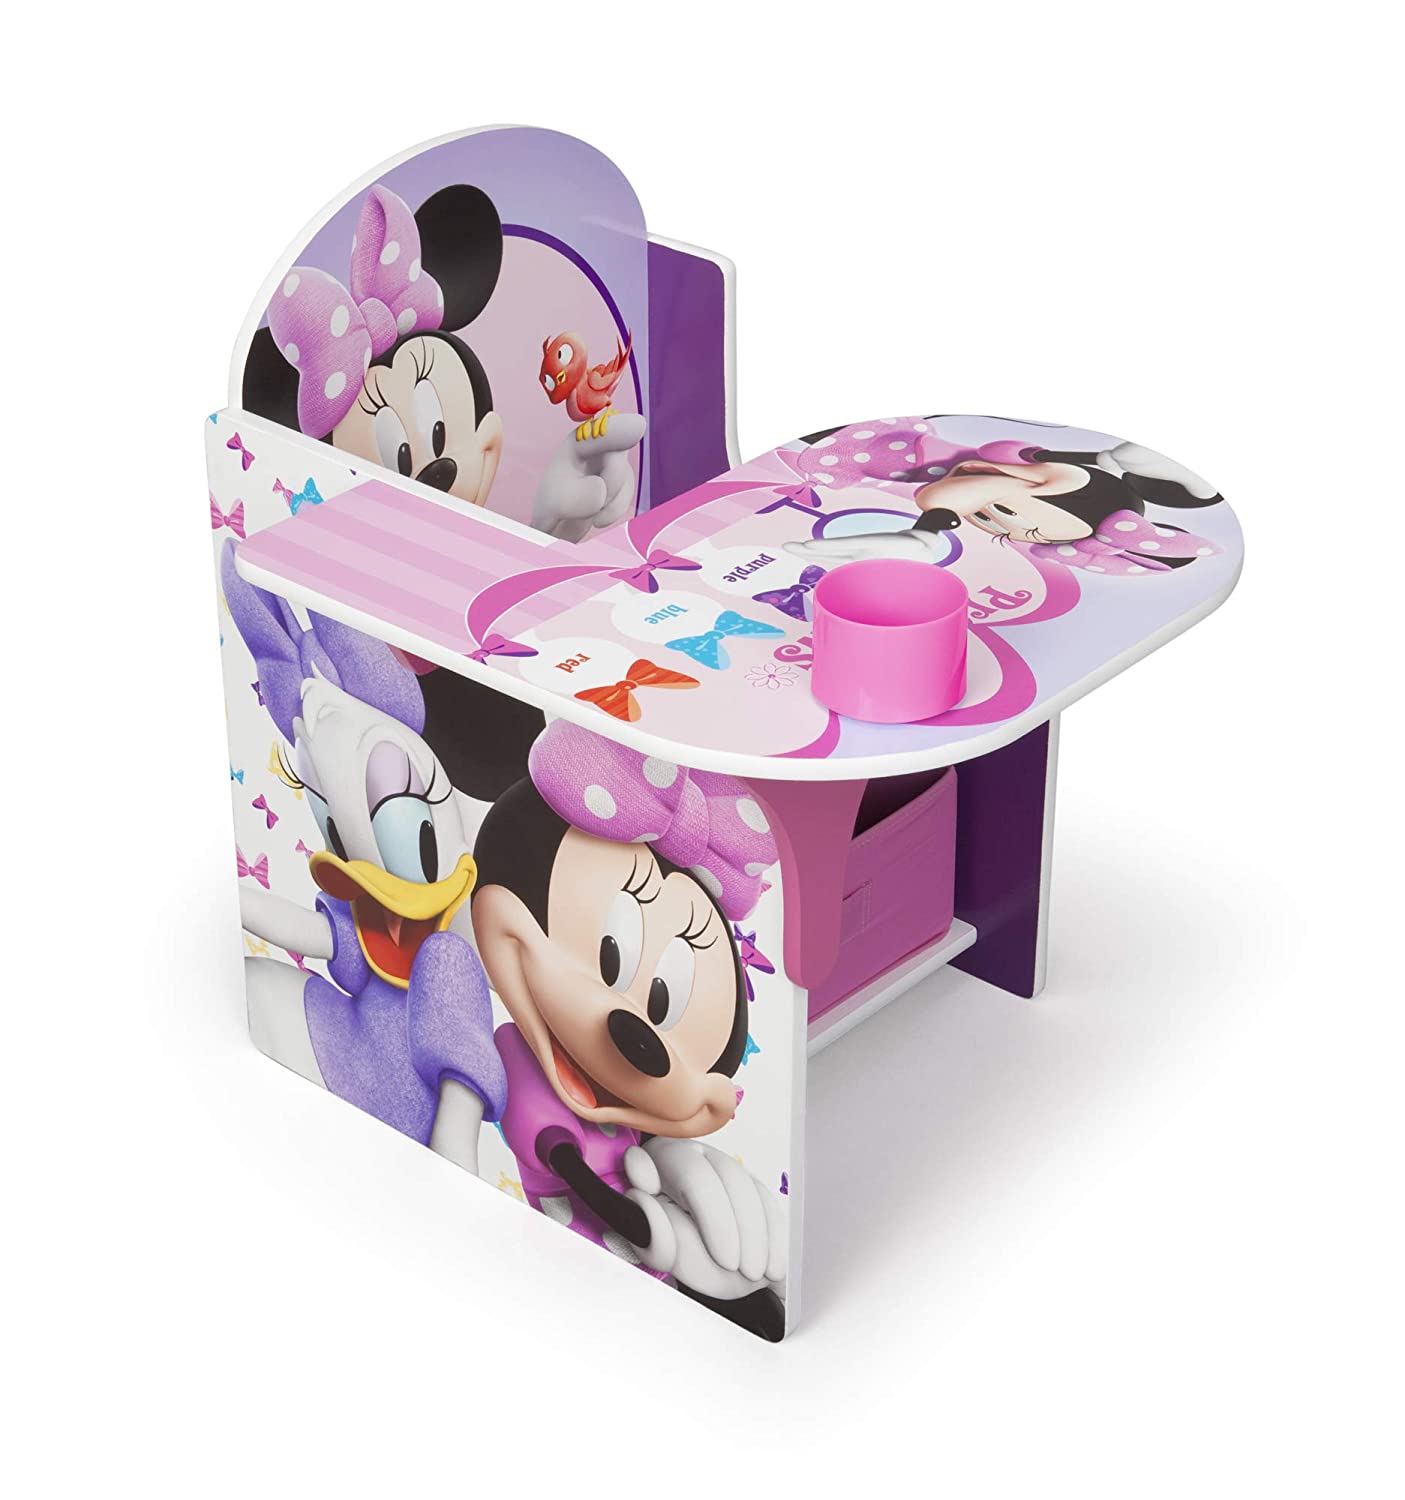 Delta Children Chair Desk With Stroage Bin, Disney Minnie Mouse